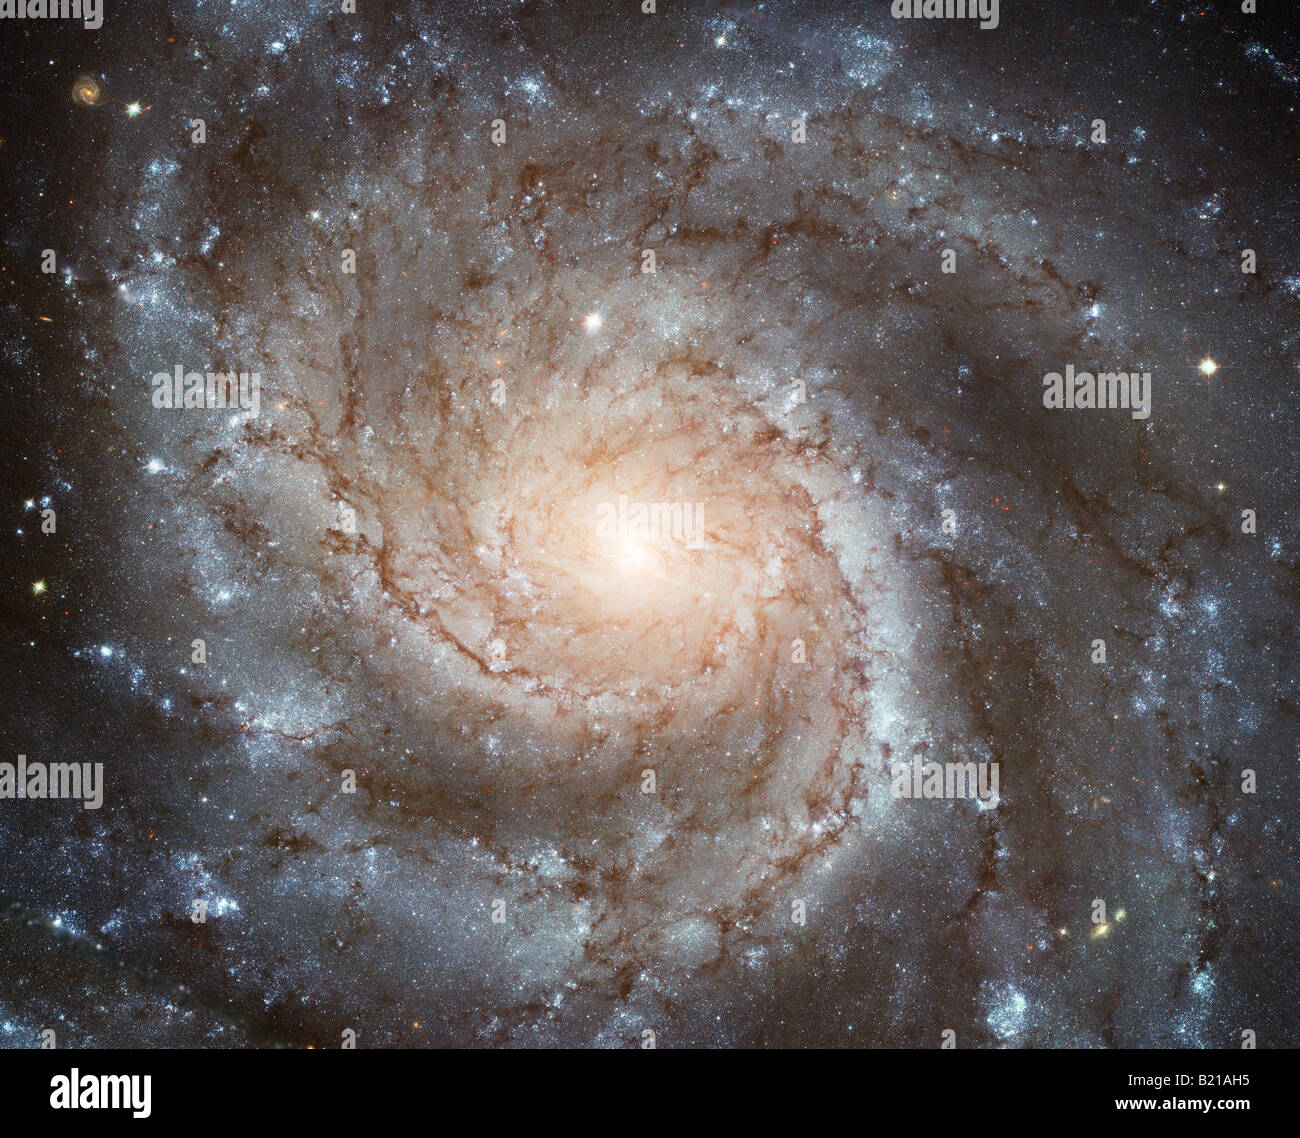 La NASA Hubble foto de galaxia espiral Foto de stock